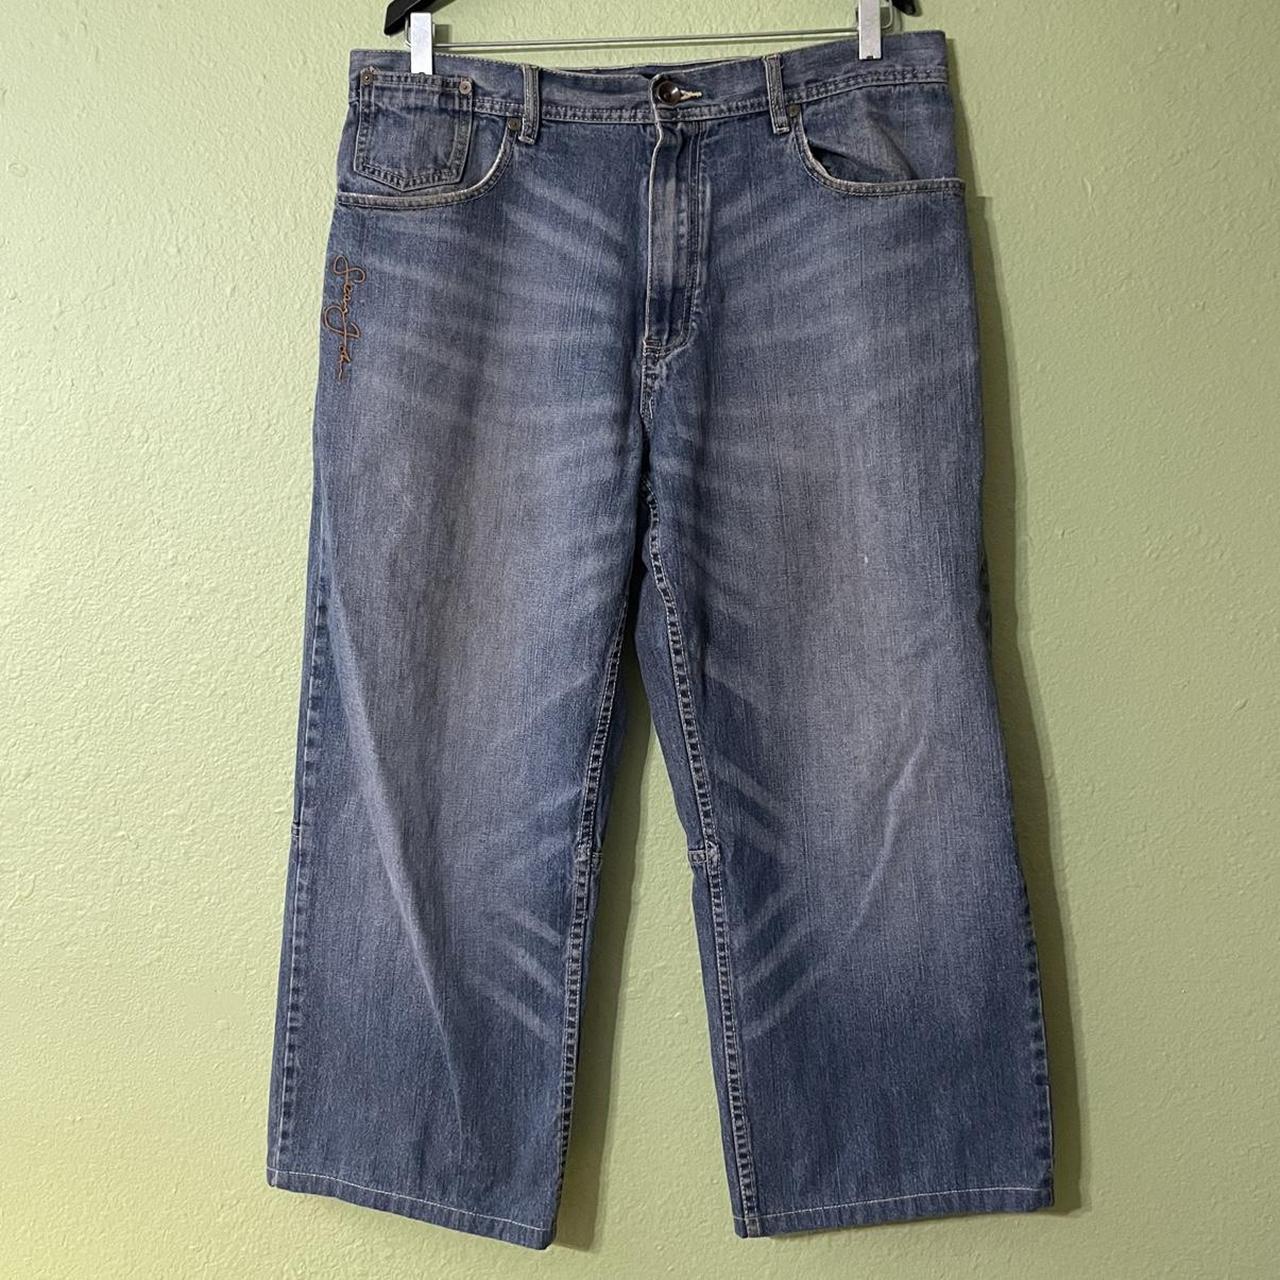 Vintage loose fit baggy jeans 👖, stone wash by Sean... - Depop